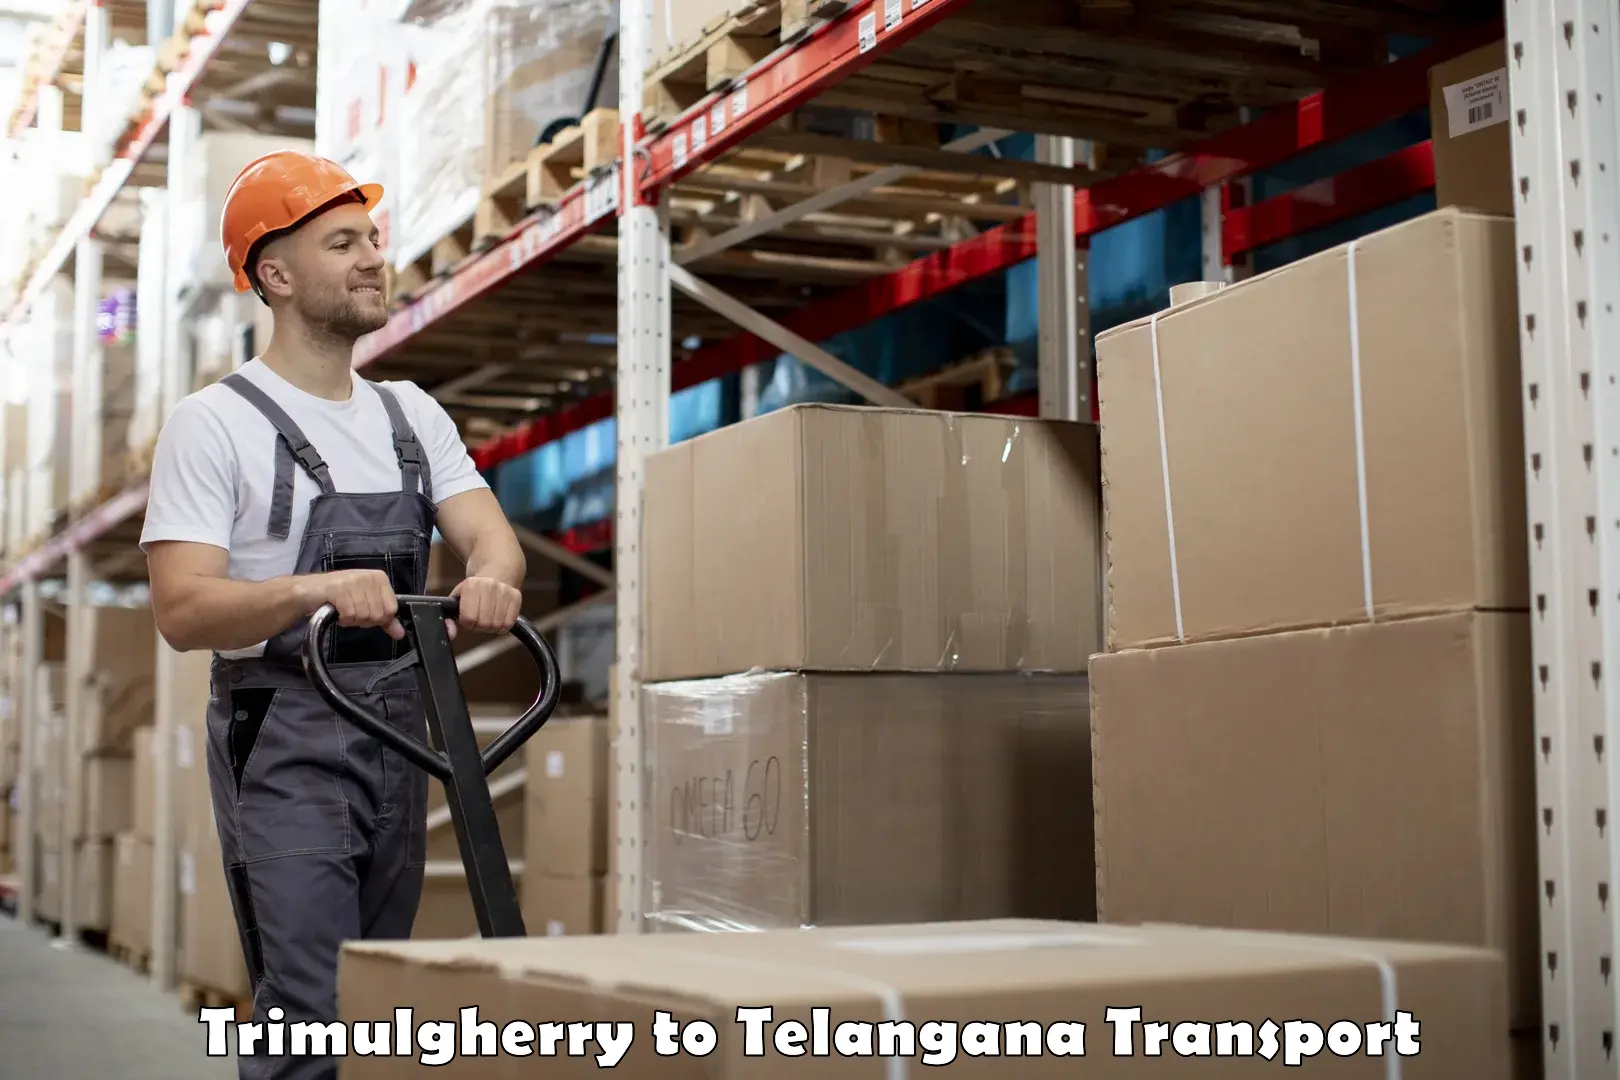 Furniture transport service Trimulgherry to Bellampalli